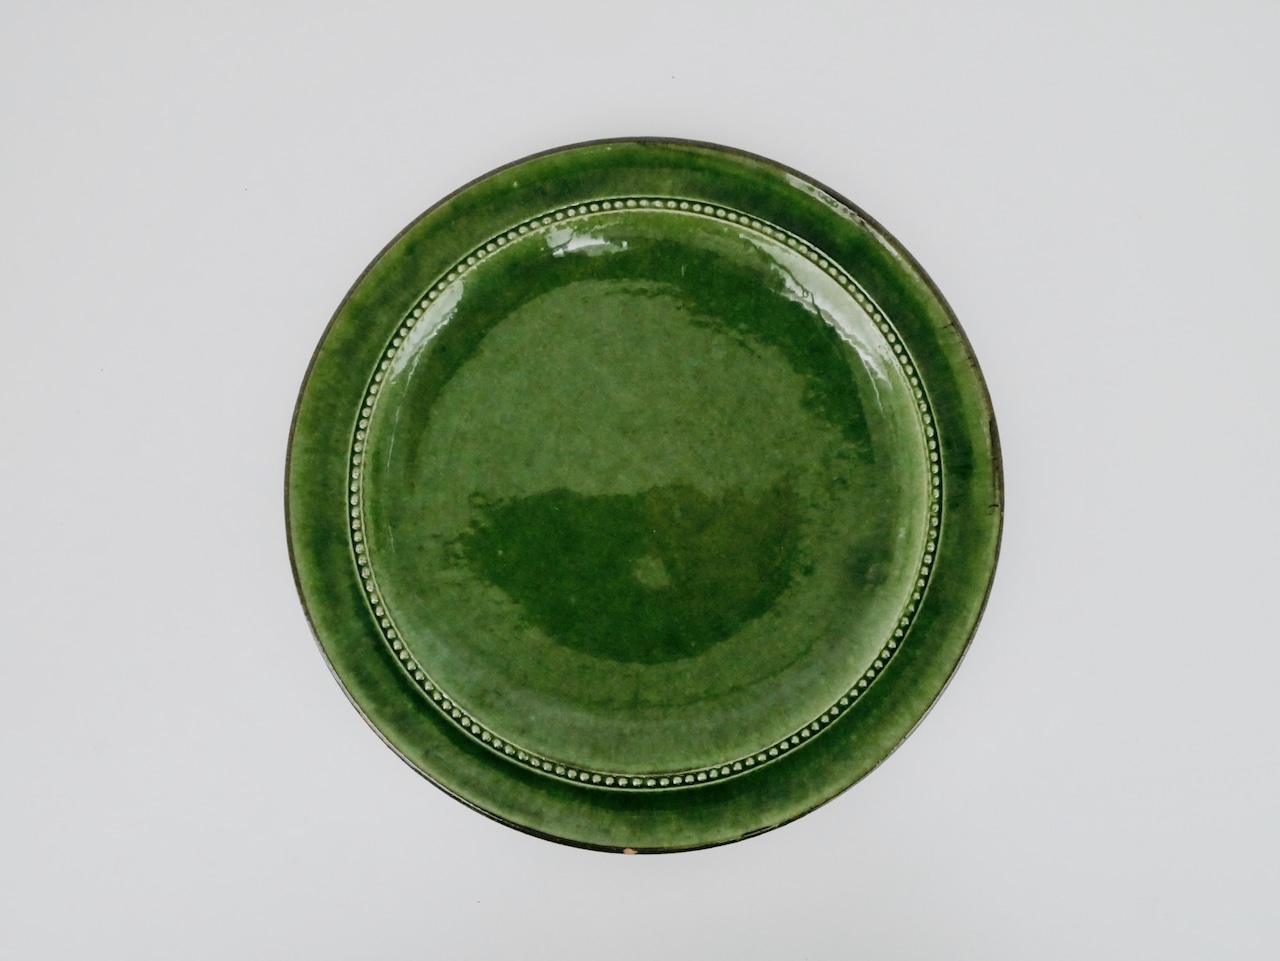 Höganäs keramik(ホガナス ケラミック) ・Old Höganäs グリーンのプレート(欠けあり)